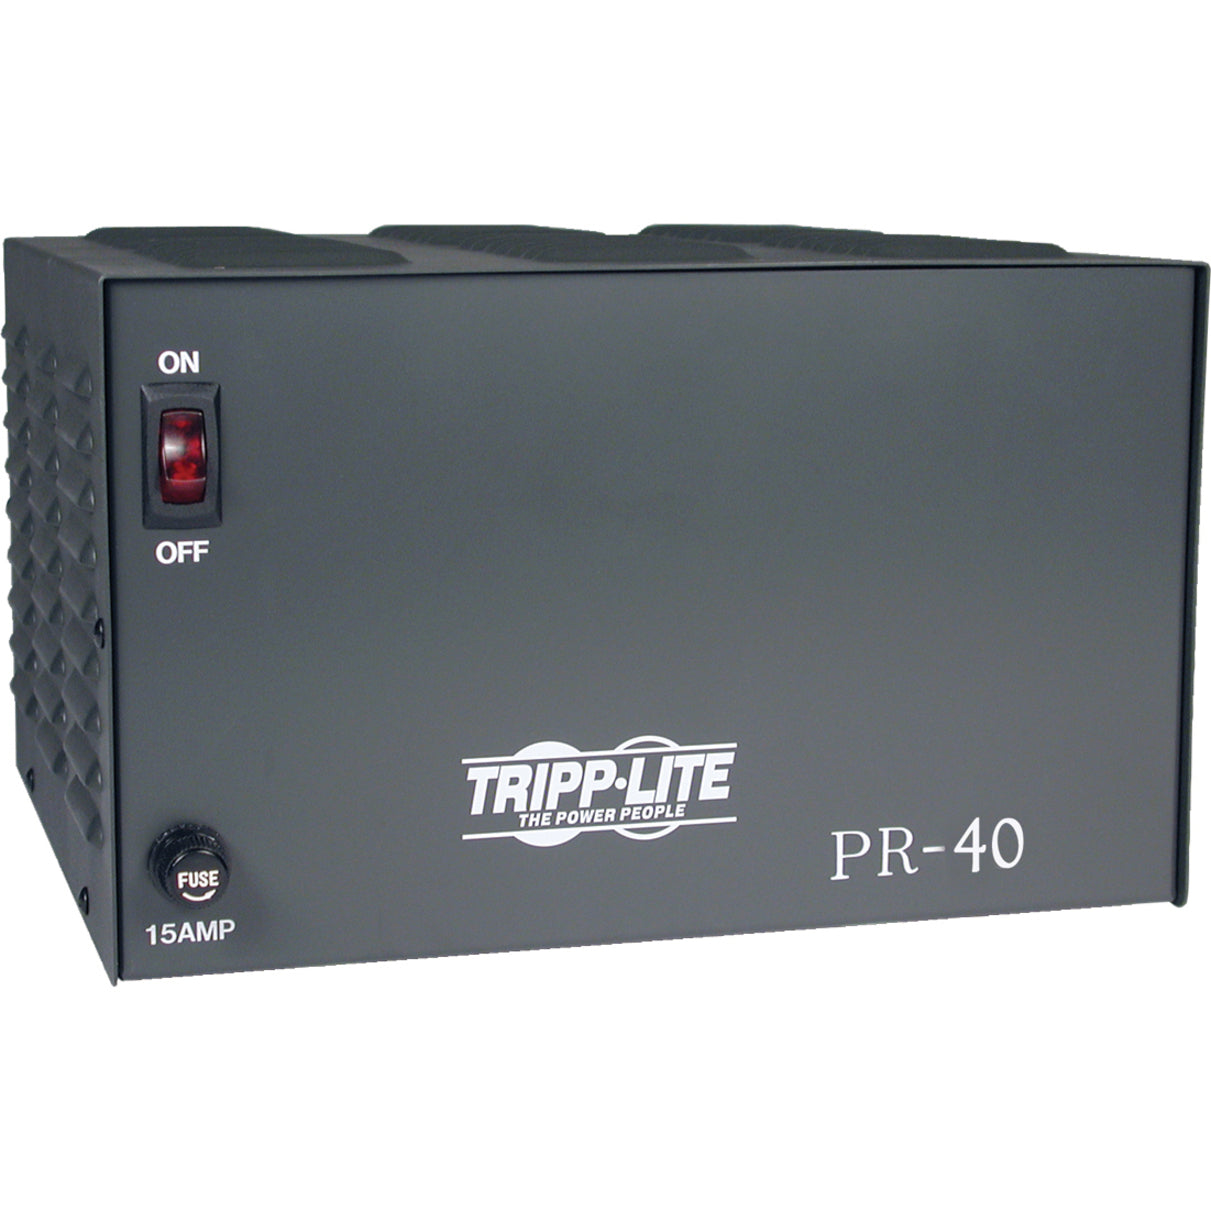 Tripp Lite PR40 200W DC Power Supply, 120V AC Input, 13.8V DC Output